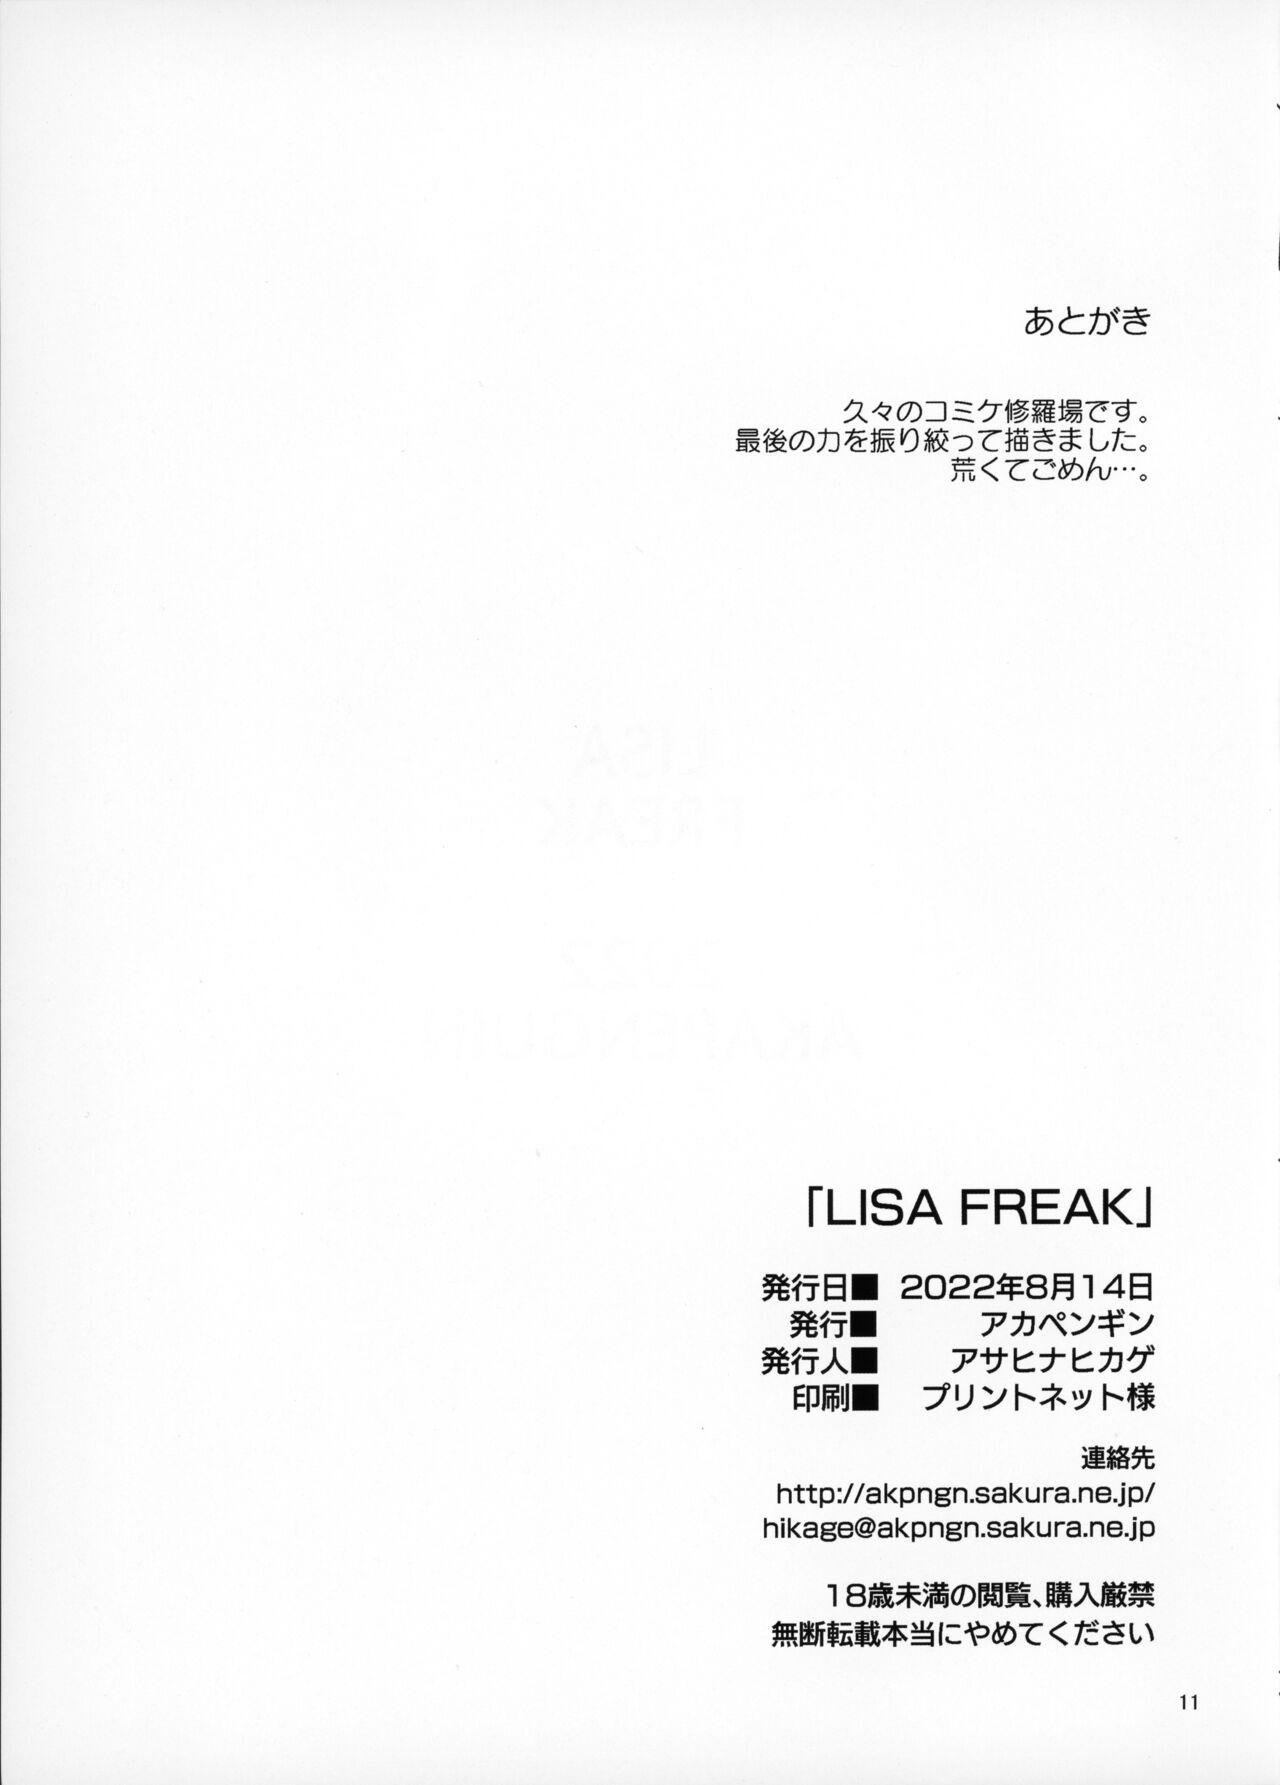 Lisa Freak 10